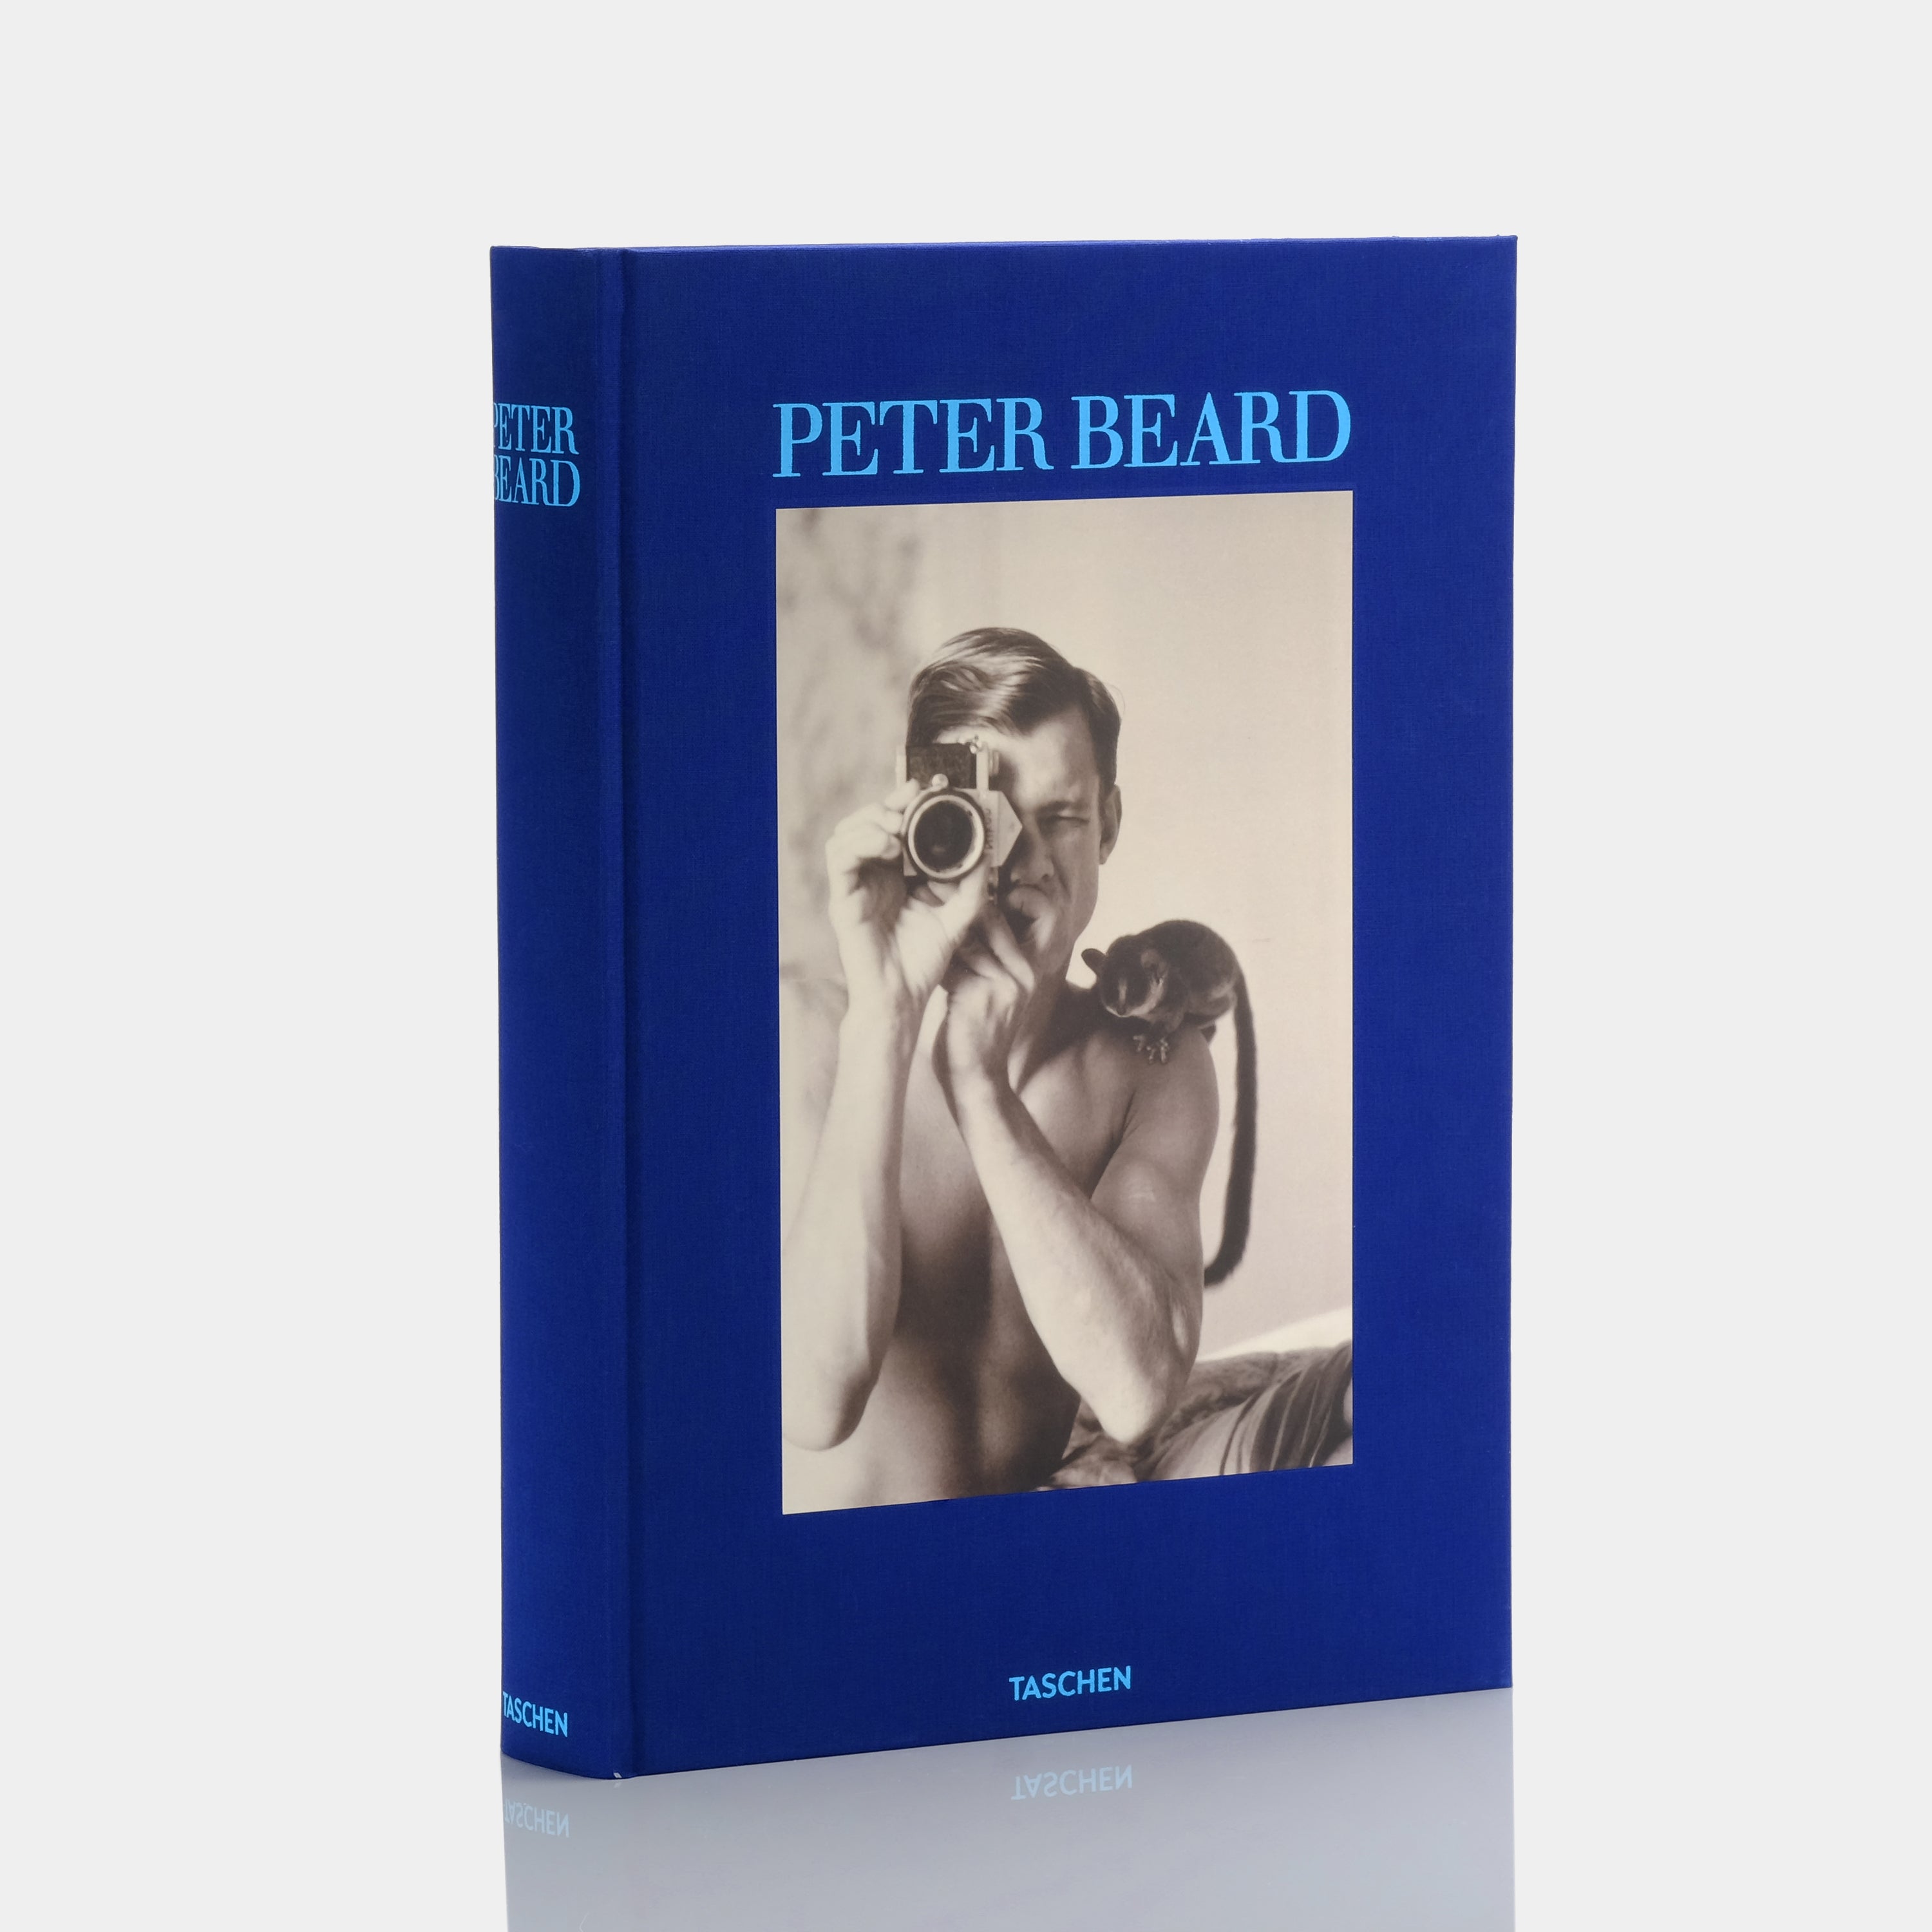 Peter Beard by Owen Edwards and Steven M. L. Aronson XL Taschen Book